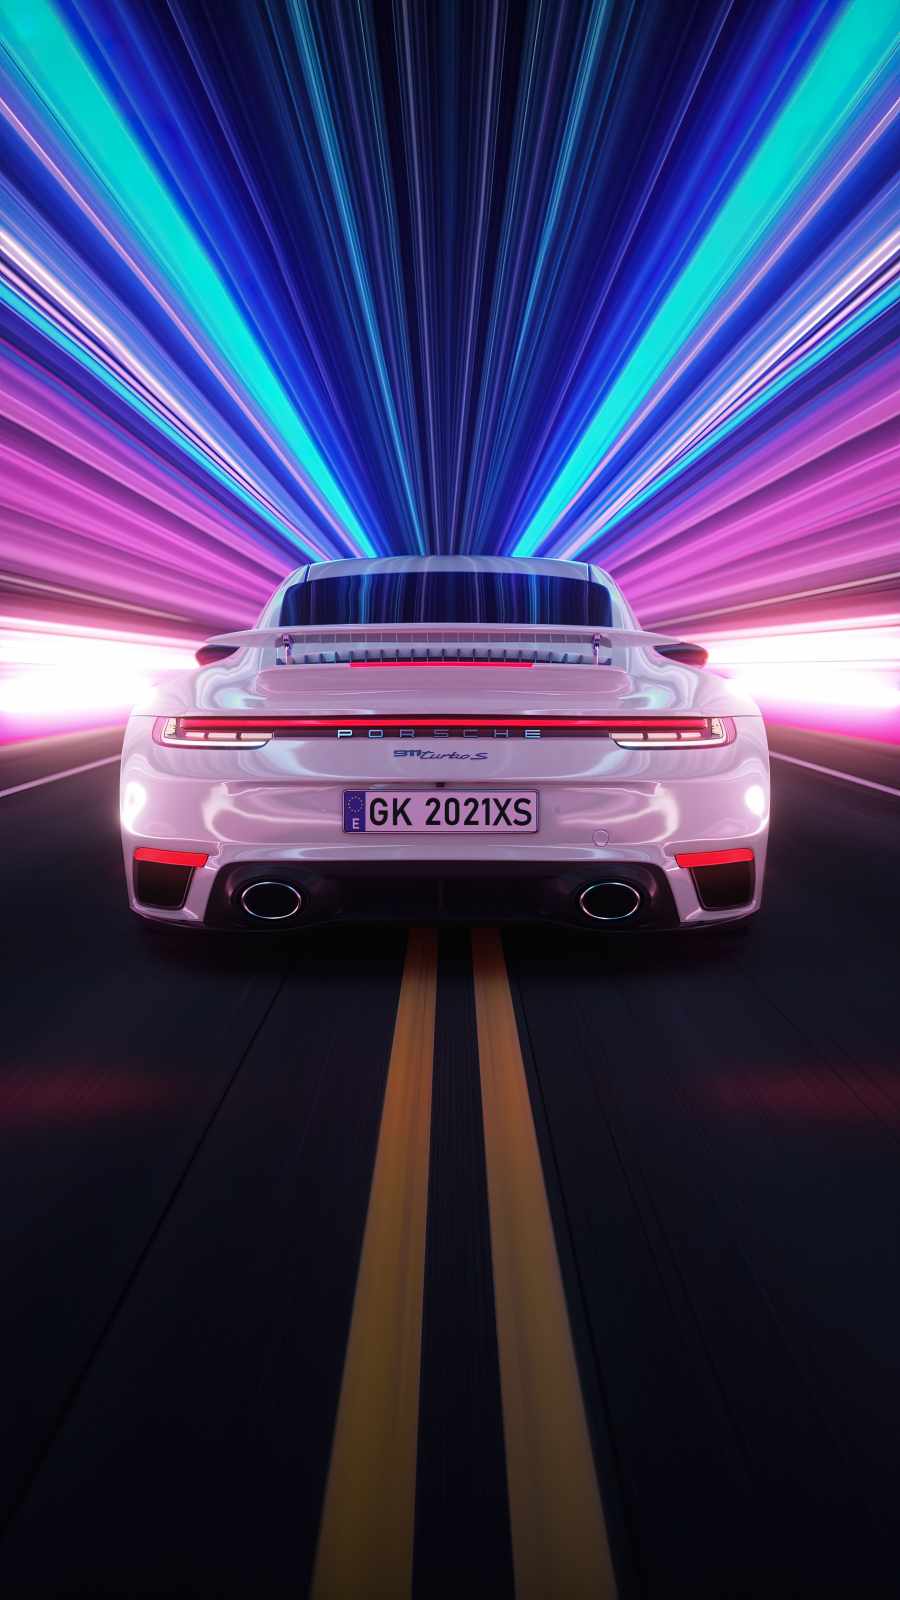 Porsche High Speed iPhone Wallpaper